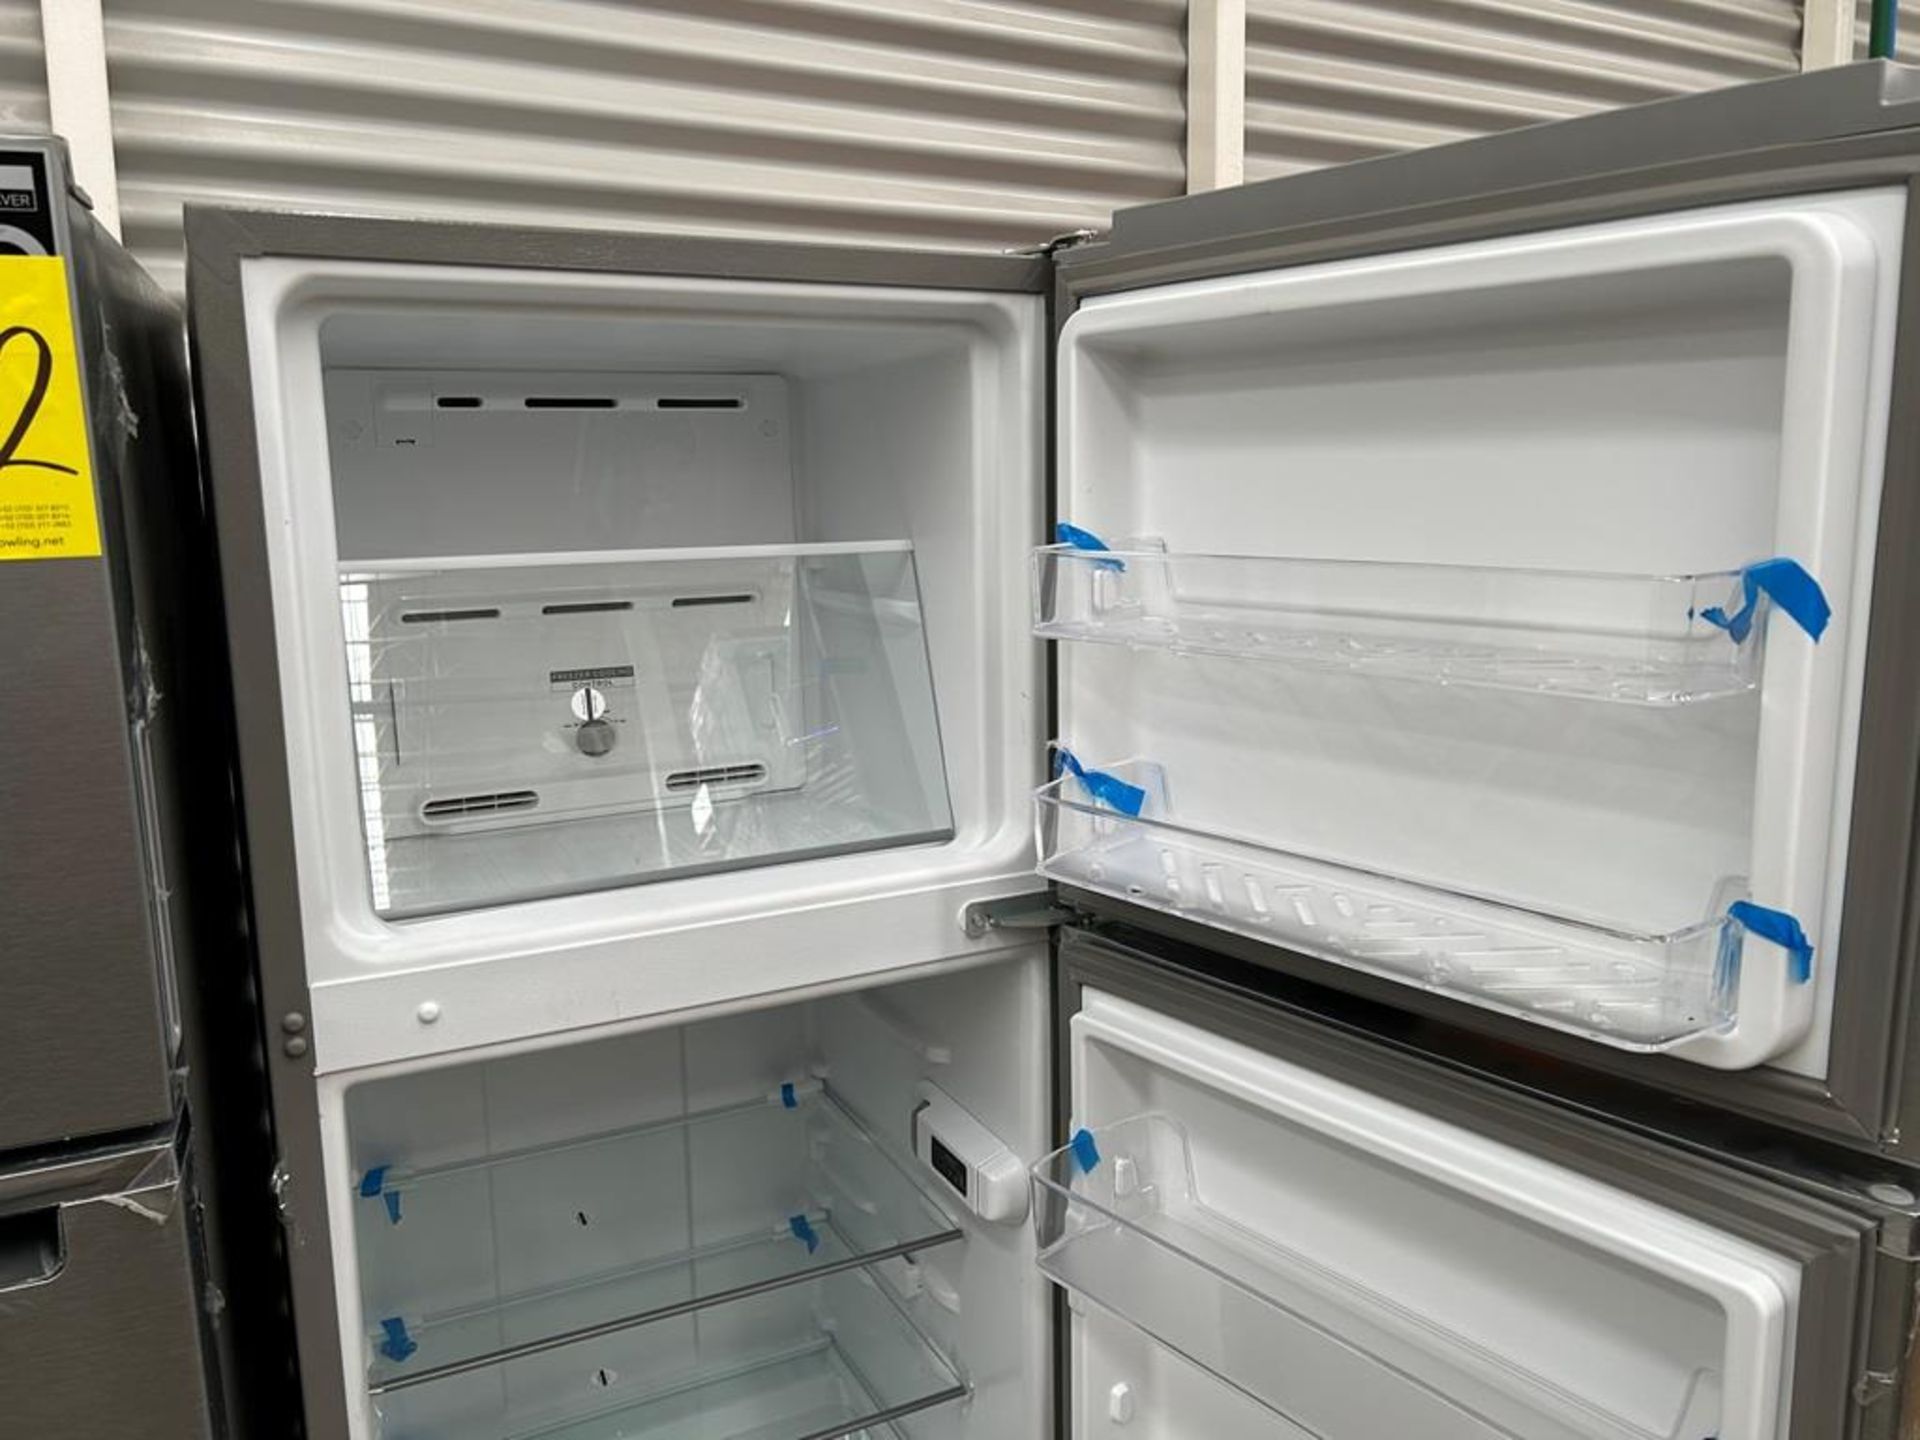 Lote de 2 refrigeradores contiene: 1 Refrigerador Marca WHIRPOOL, Modelo WT1230K, Serie 91306, Colo - Image 11 of 17